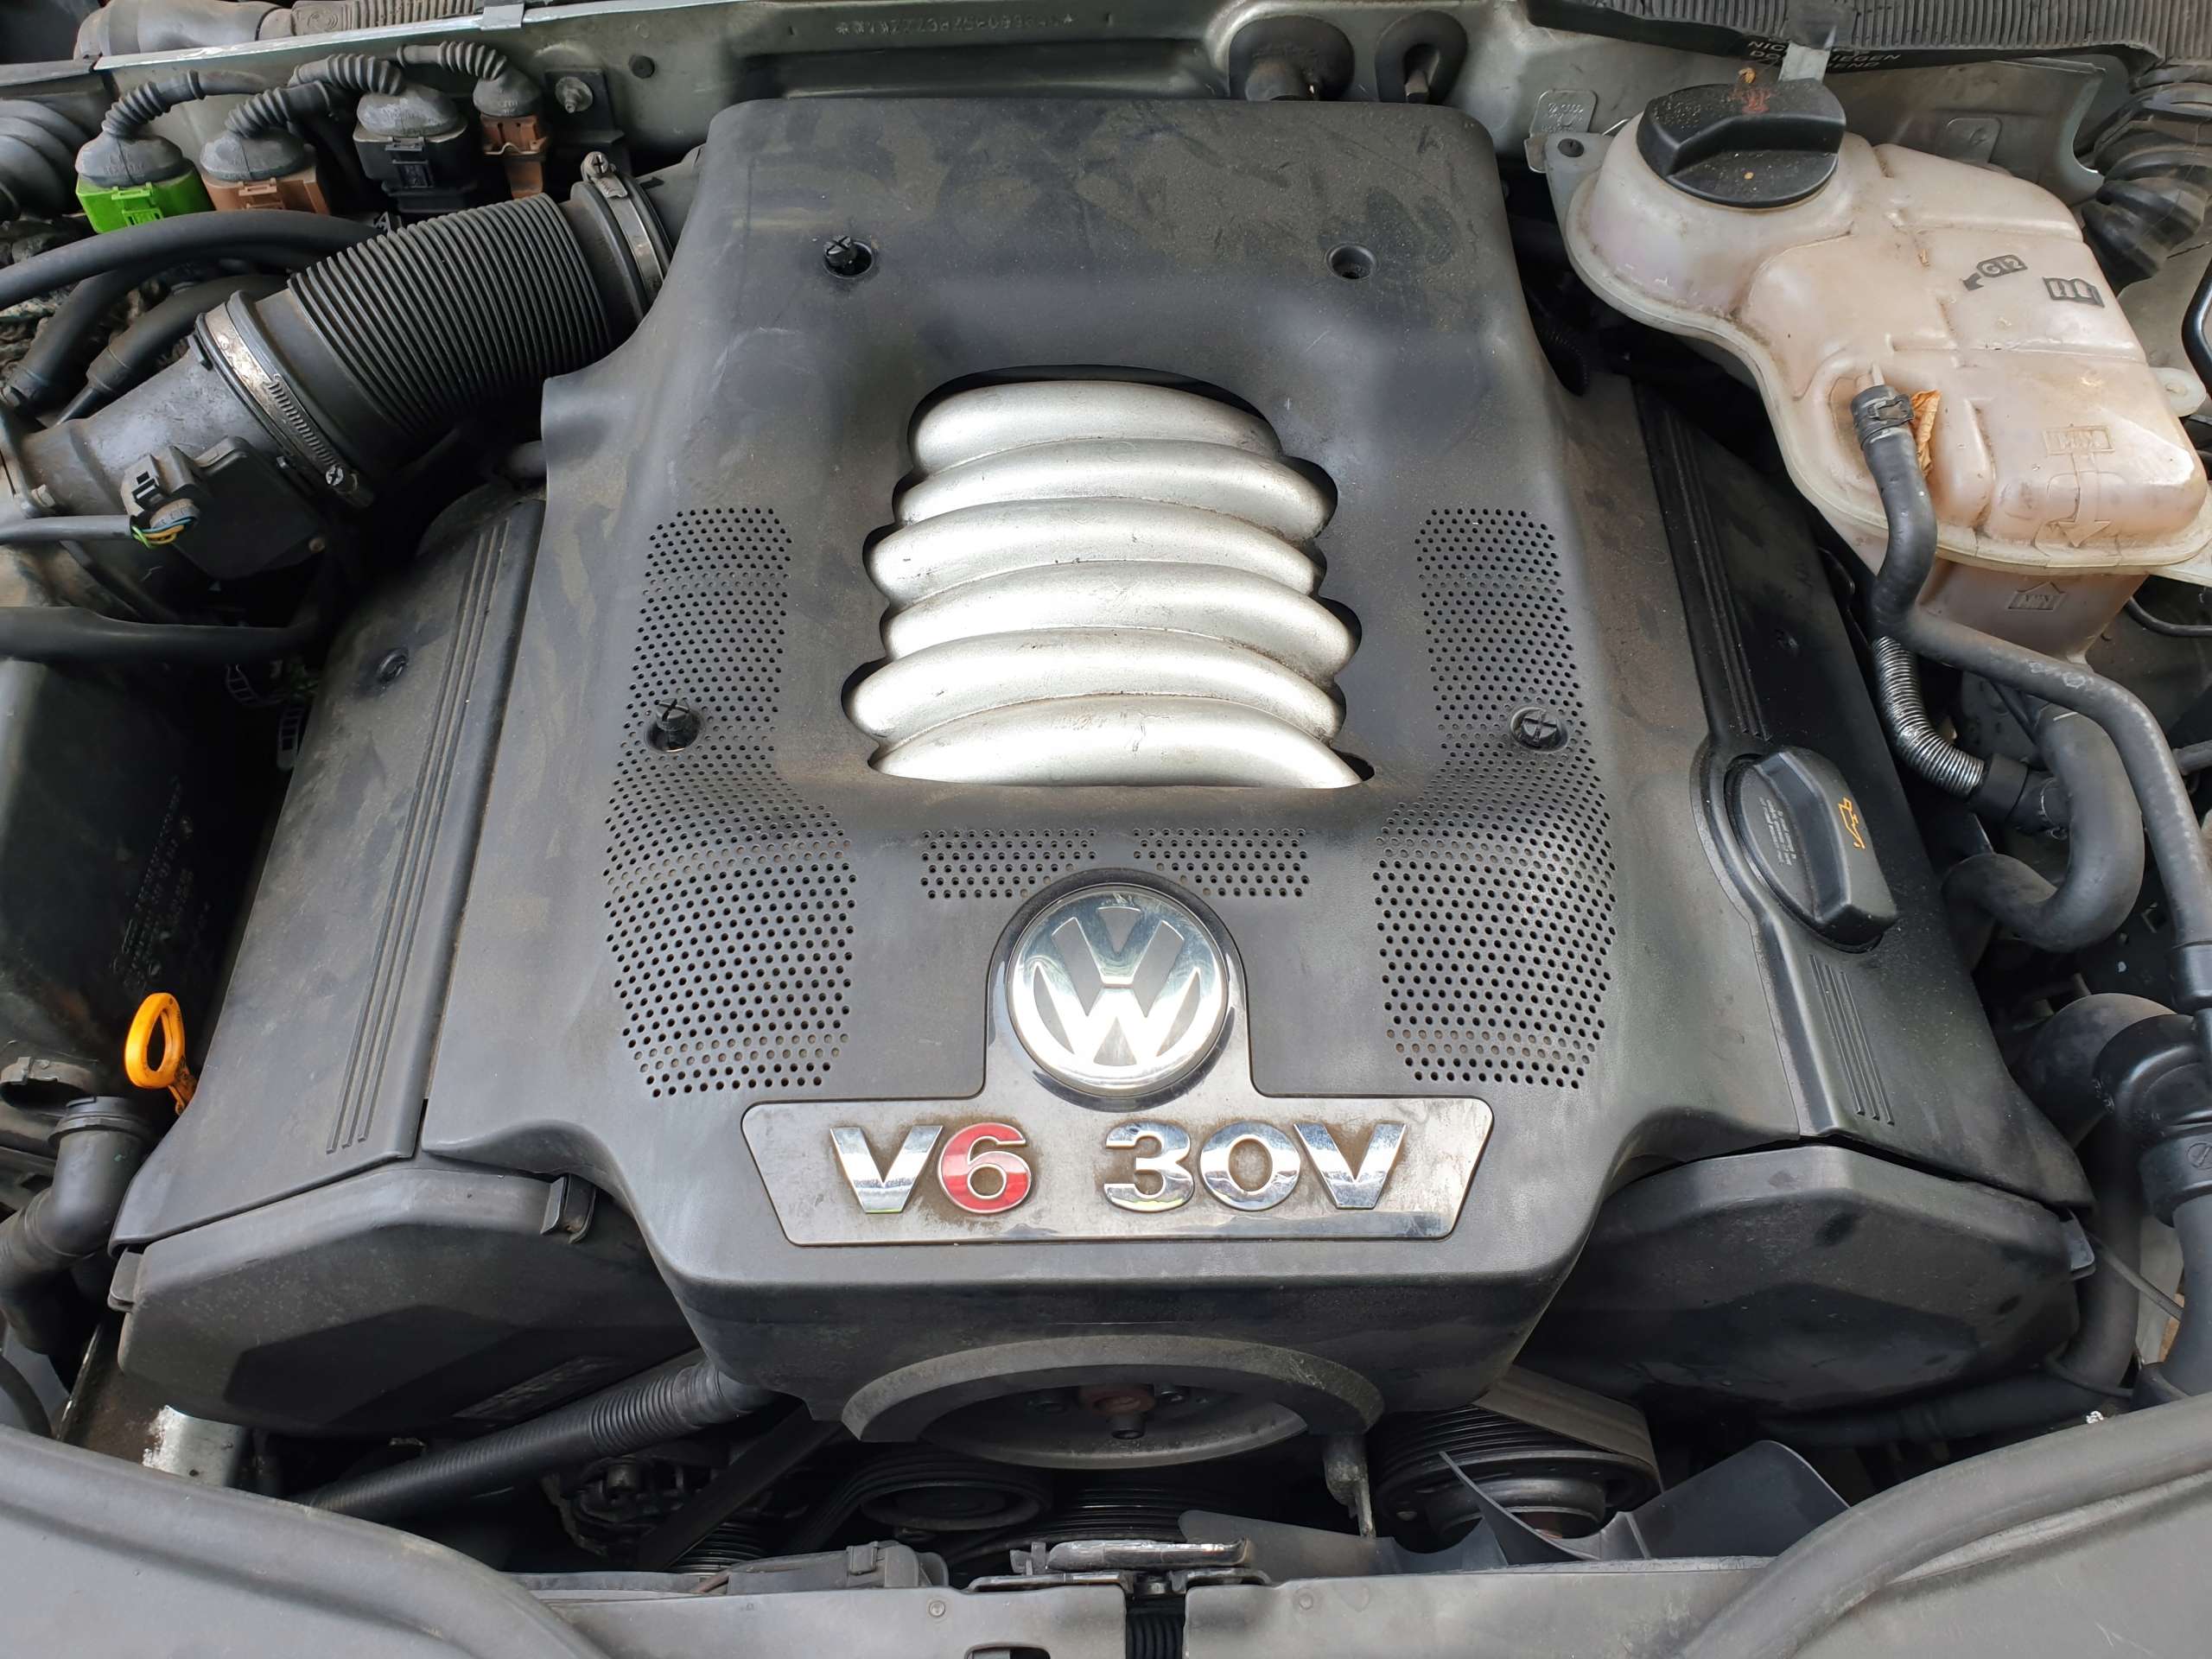 Купить двигатель на фольксваген пассат б5. Пассат б5 2.8 v6. VW Passat b5 v6 30v. VW Passat b5 v6 2.8. Двигатель Volkswagen Passat b5 2.8.